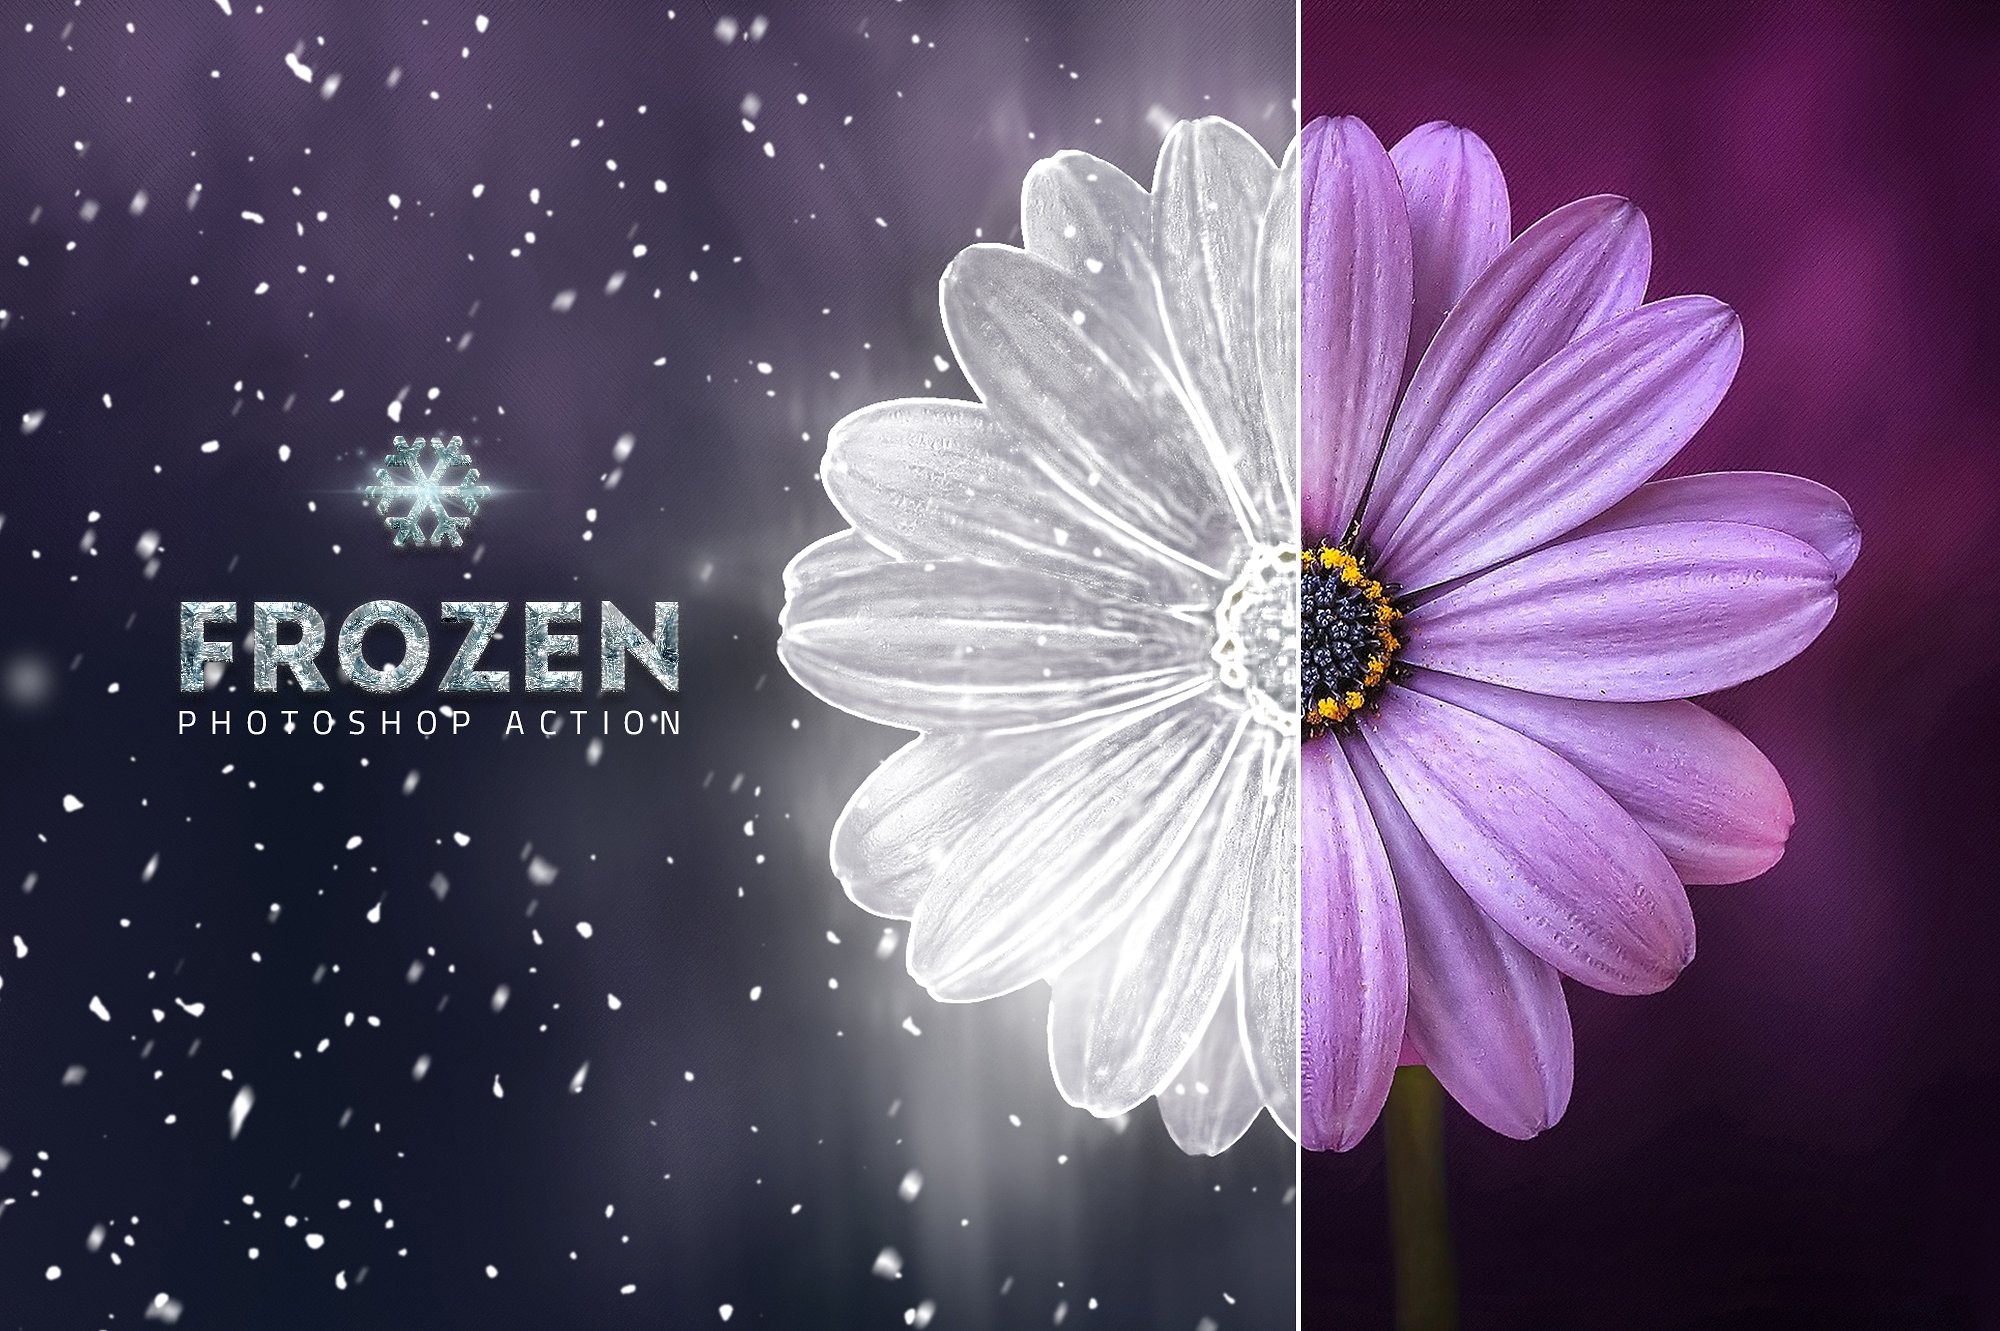 独特冰块雕刻效果的PS动作 Frozen Ice Photo Effect [atn]插图(6)